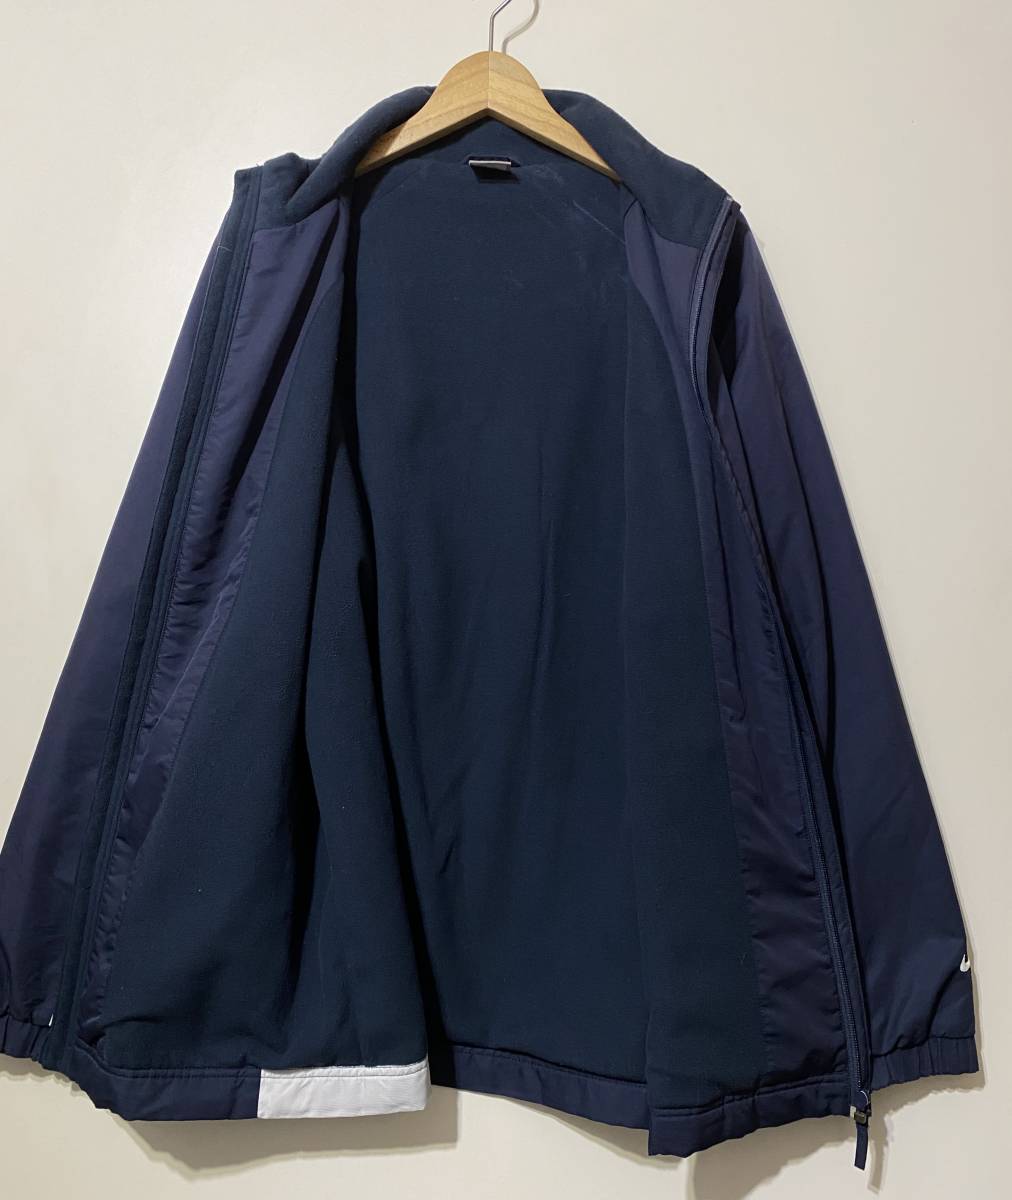 * NIKE men's lining fleece full Zip jacket navy navy blue L Zip up blouson windbreaker embroidery Logo warm-up 